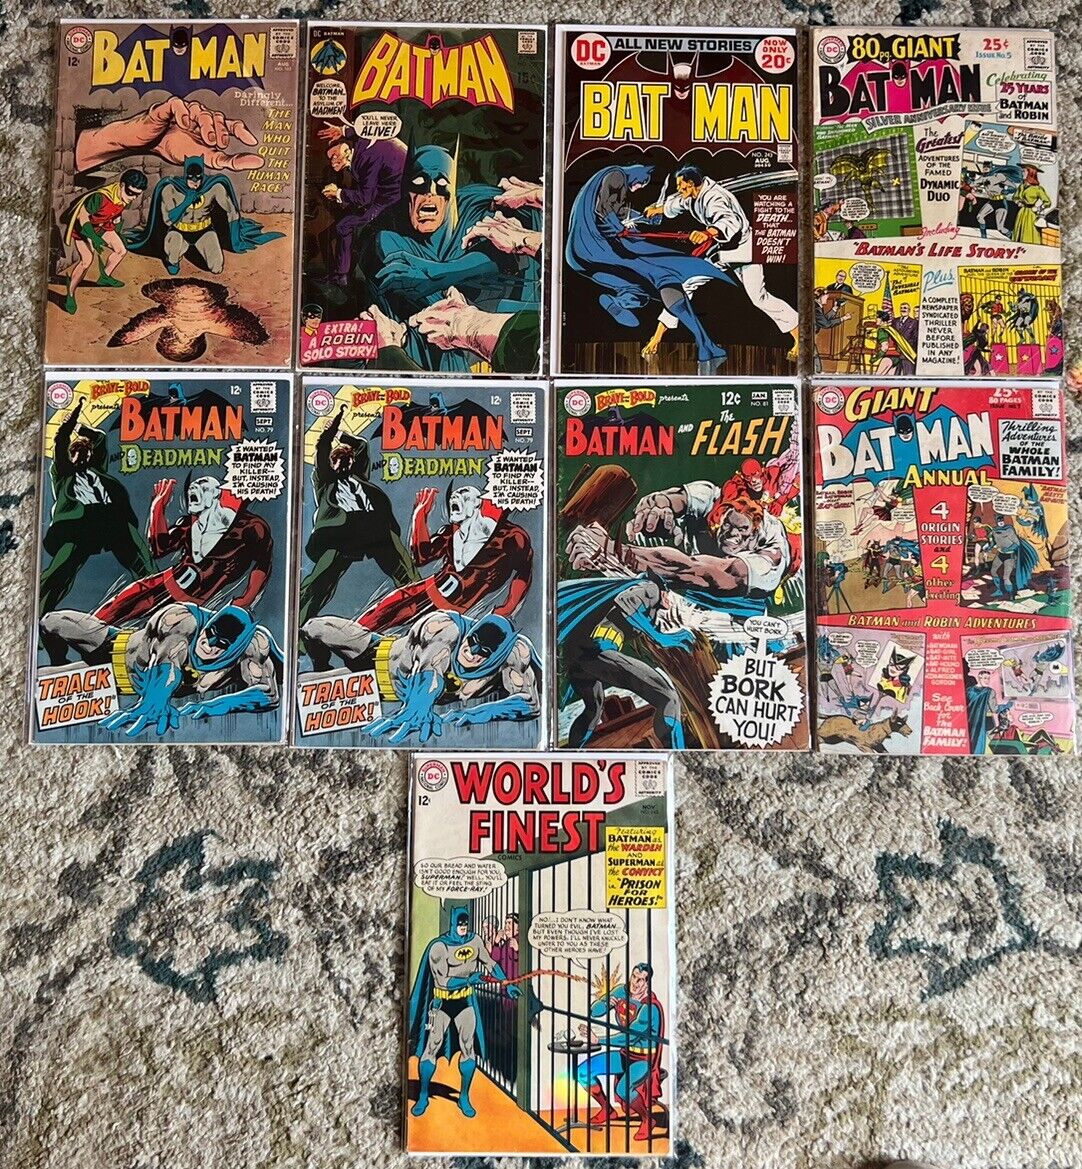 HUGE Miscellaneous Vintage Batman DC Comics Lot Of 9  UNGRADED Fair Condition